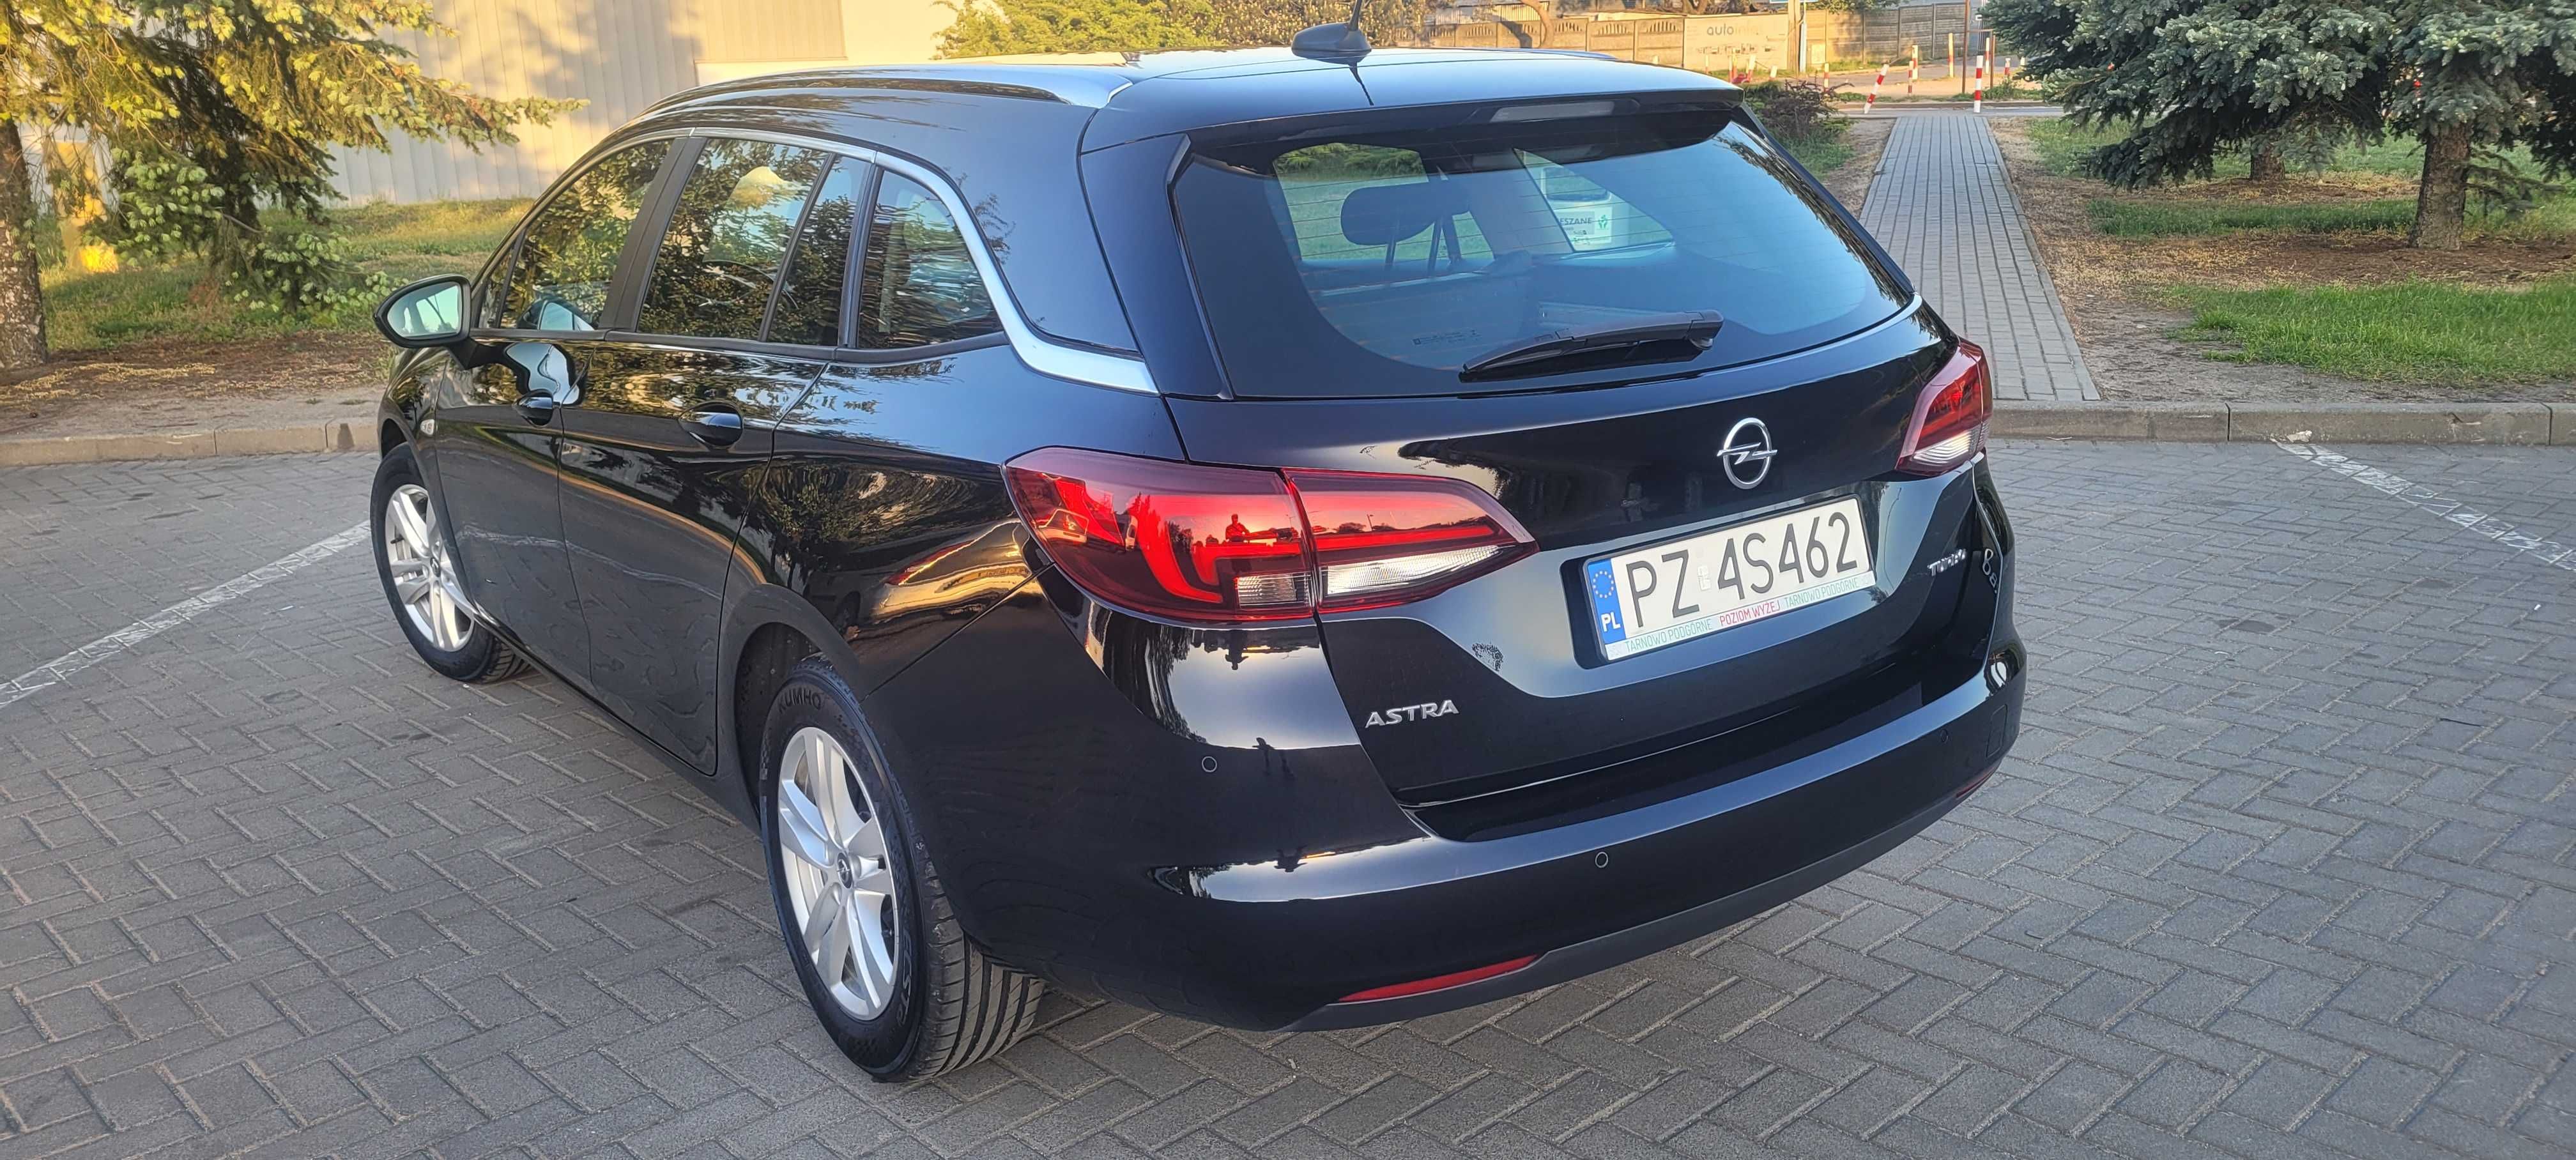 Opel Astra 1.4 turbo